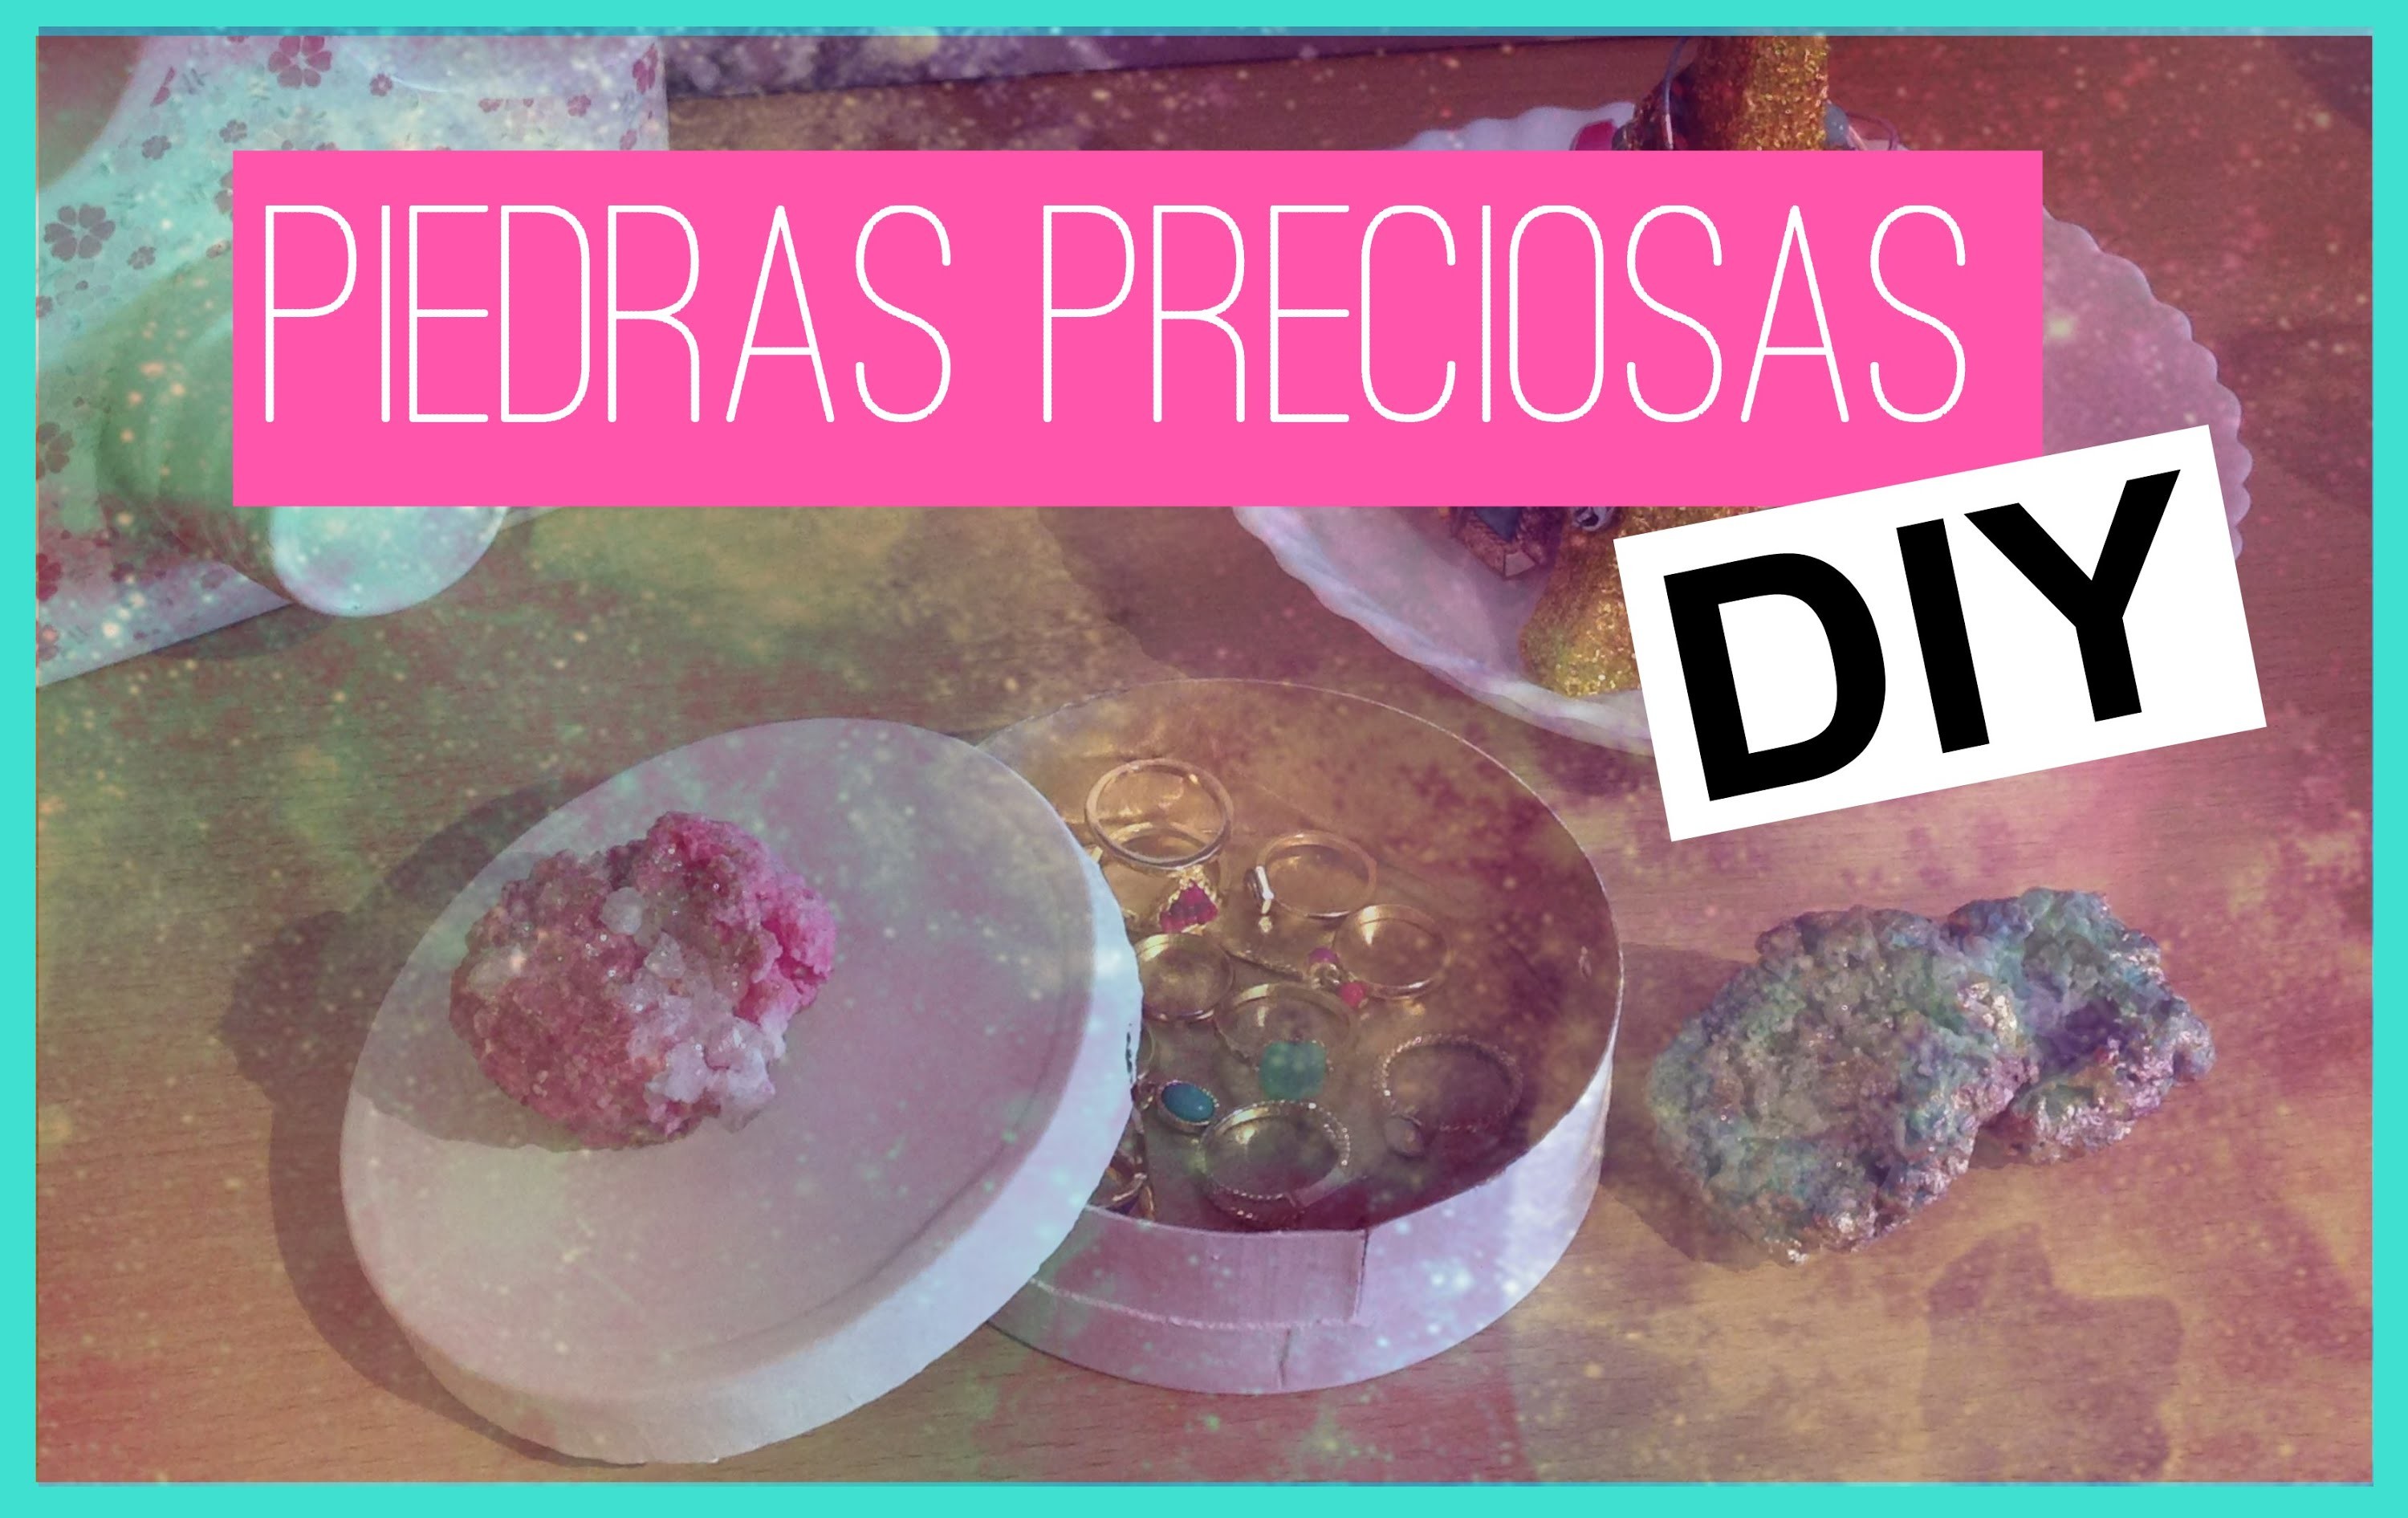 Diy Piedras preciosas ! ★ Pinterest Room Decorations ★